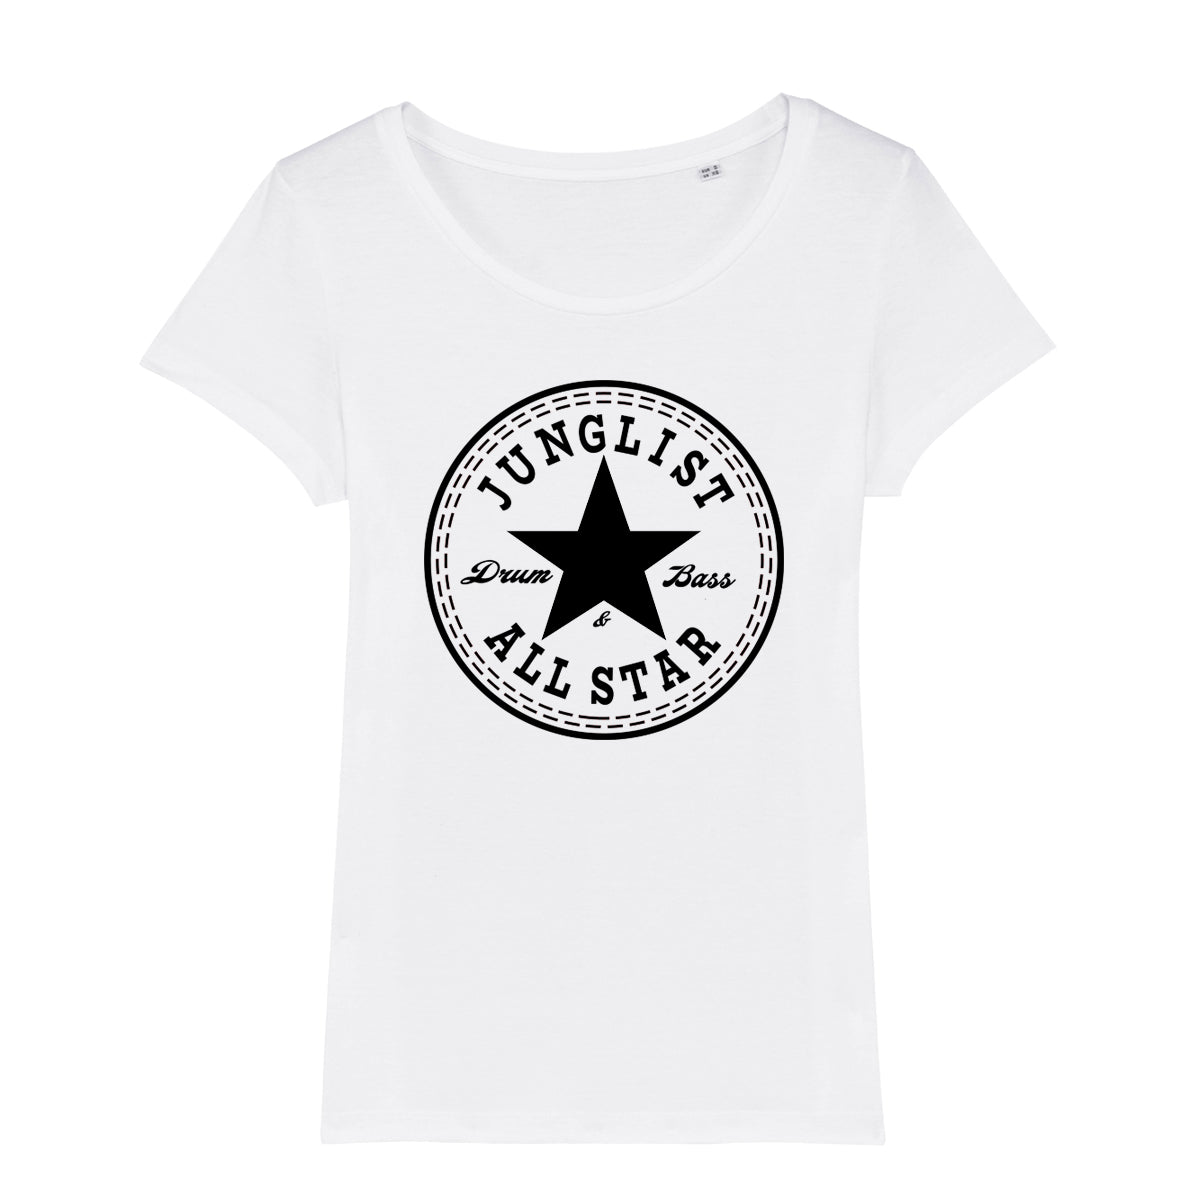 Junglist All Star Women's T-Shirt